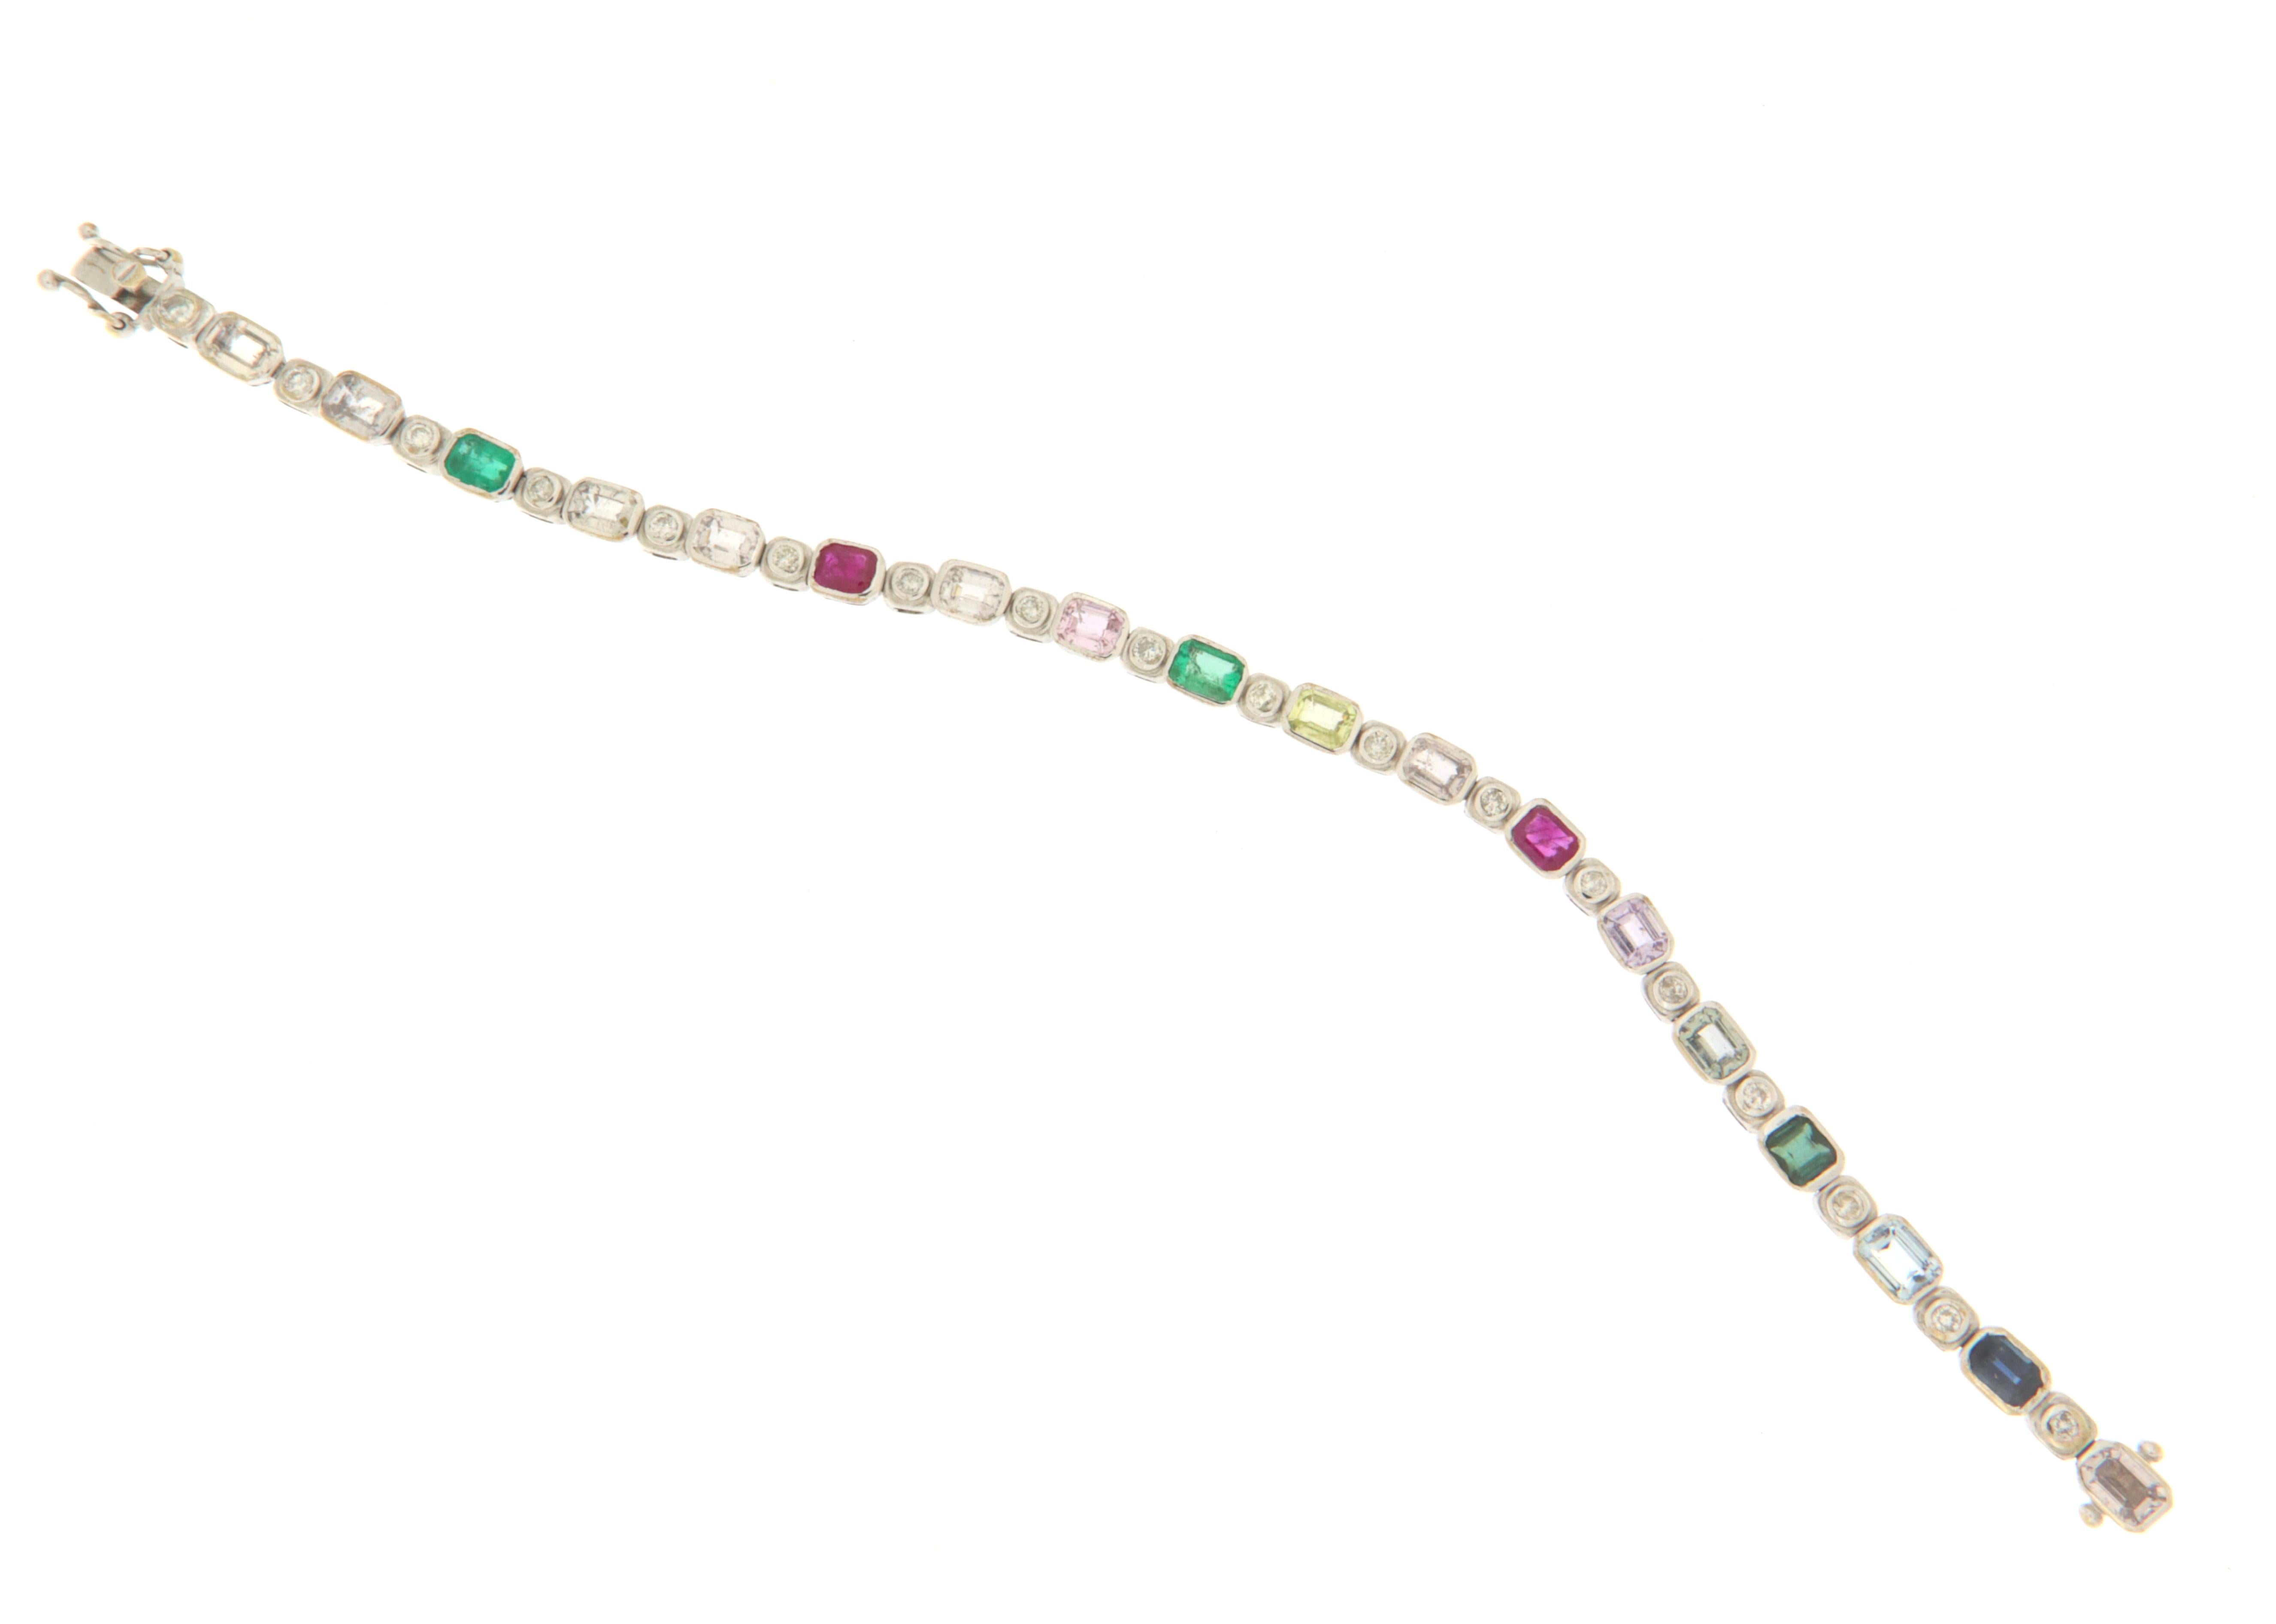 Bracelet modèle tennis réalisé entièrement à la main en or blanc 18 Karati monté de saphirs, rubis et émeraudes de taille octogonale et de diamants de taille ronde.
Une explosion de couleurs convenant au poignet d'une femme mais aussi d'un